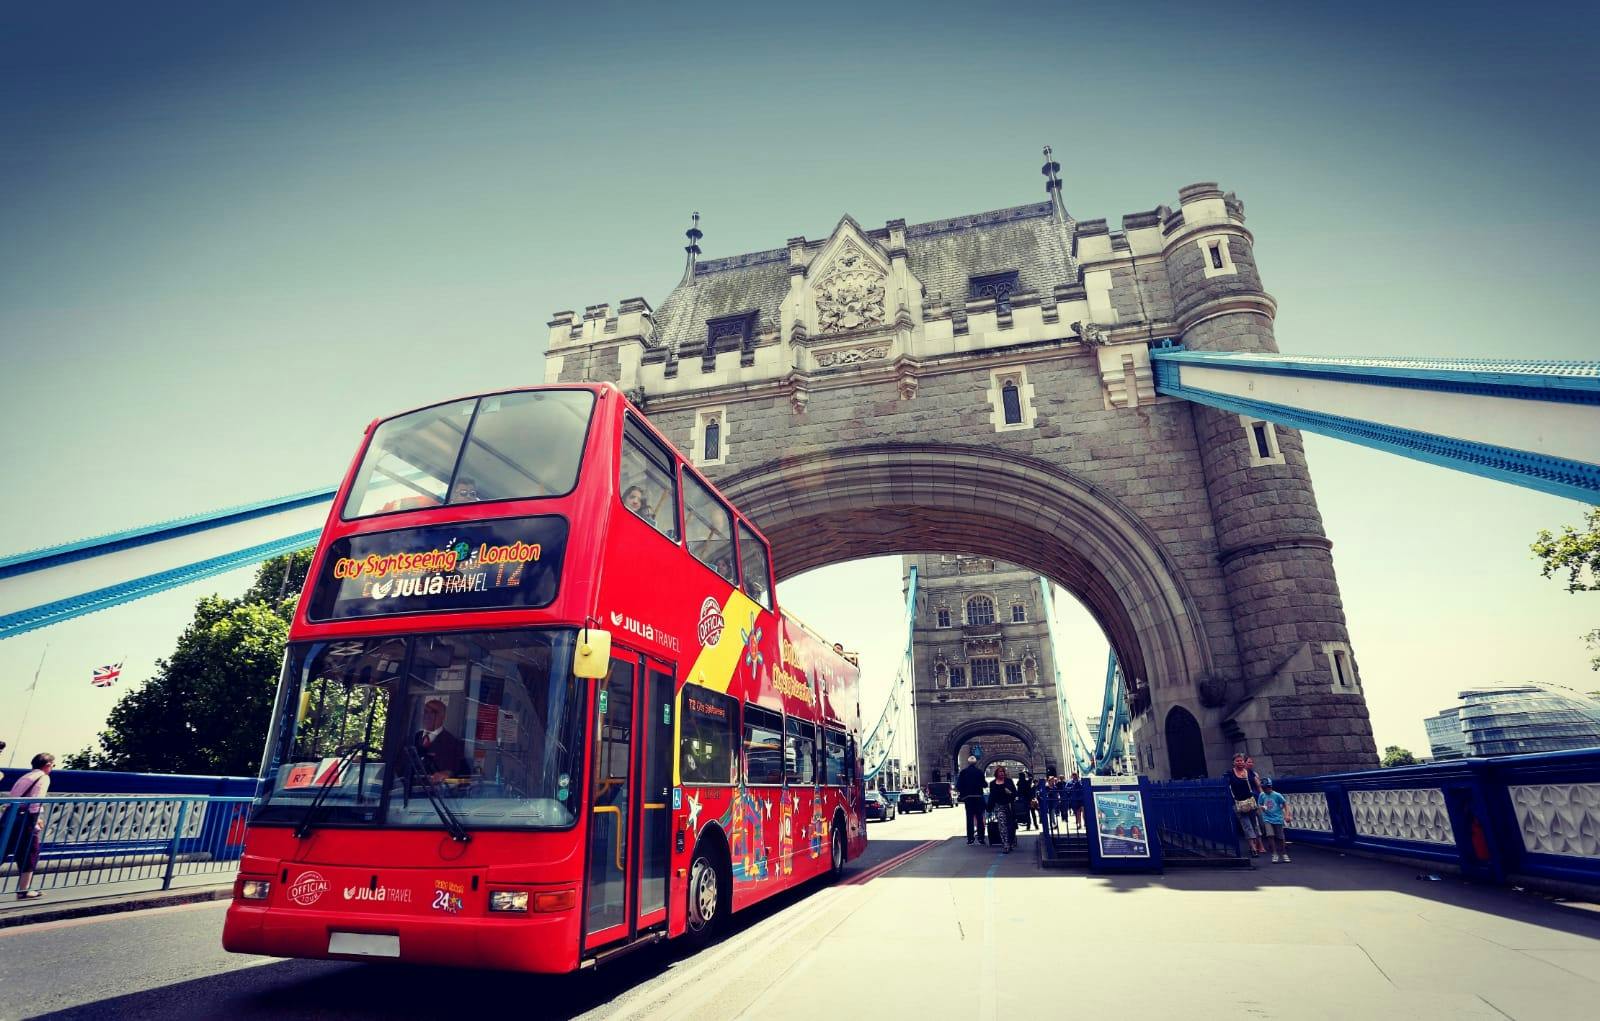 Excursão turística em ônibus hop-on hop-off pela cidade de Londres